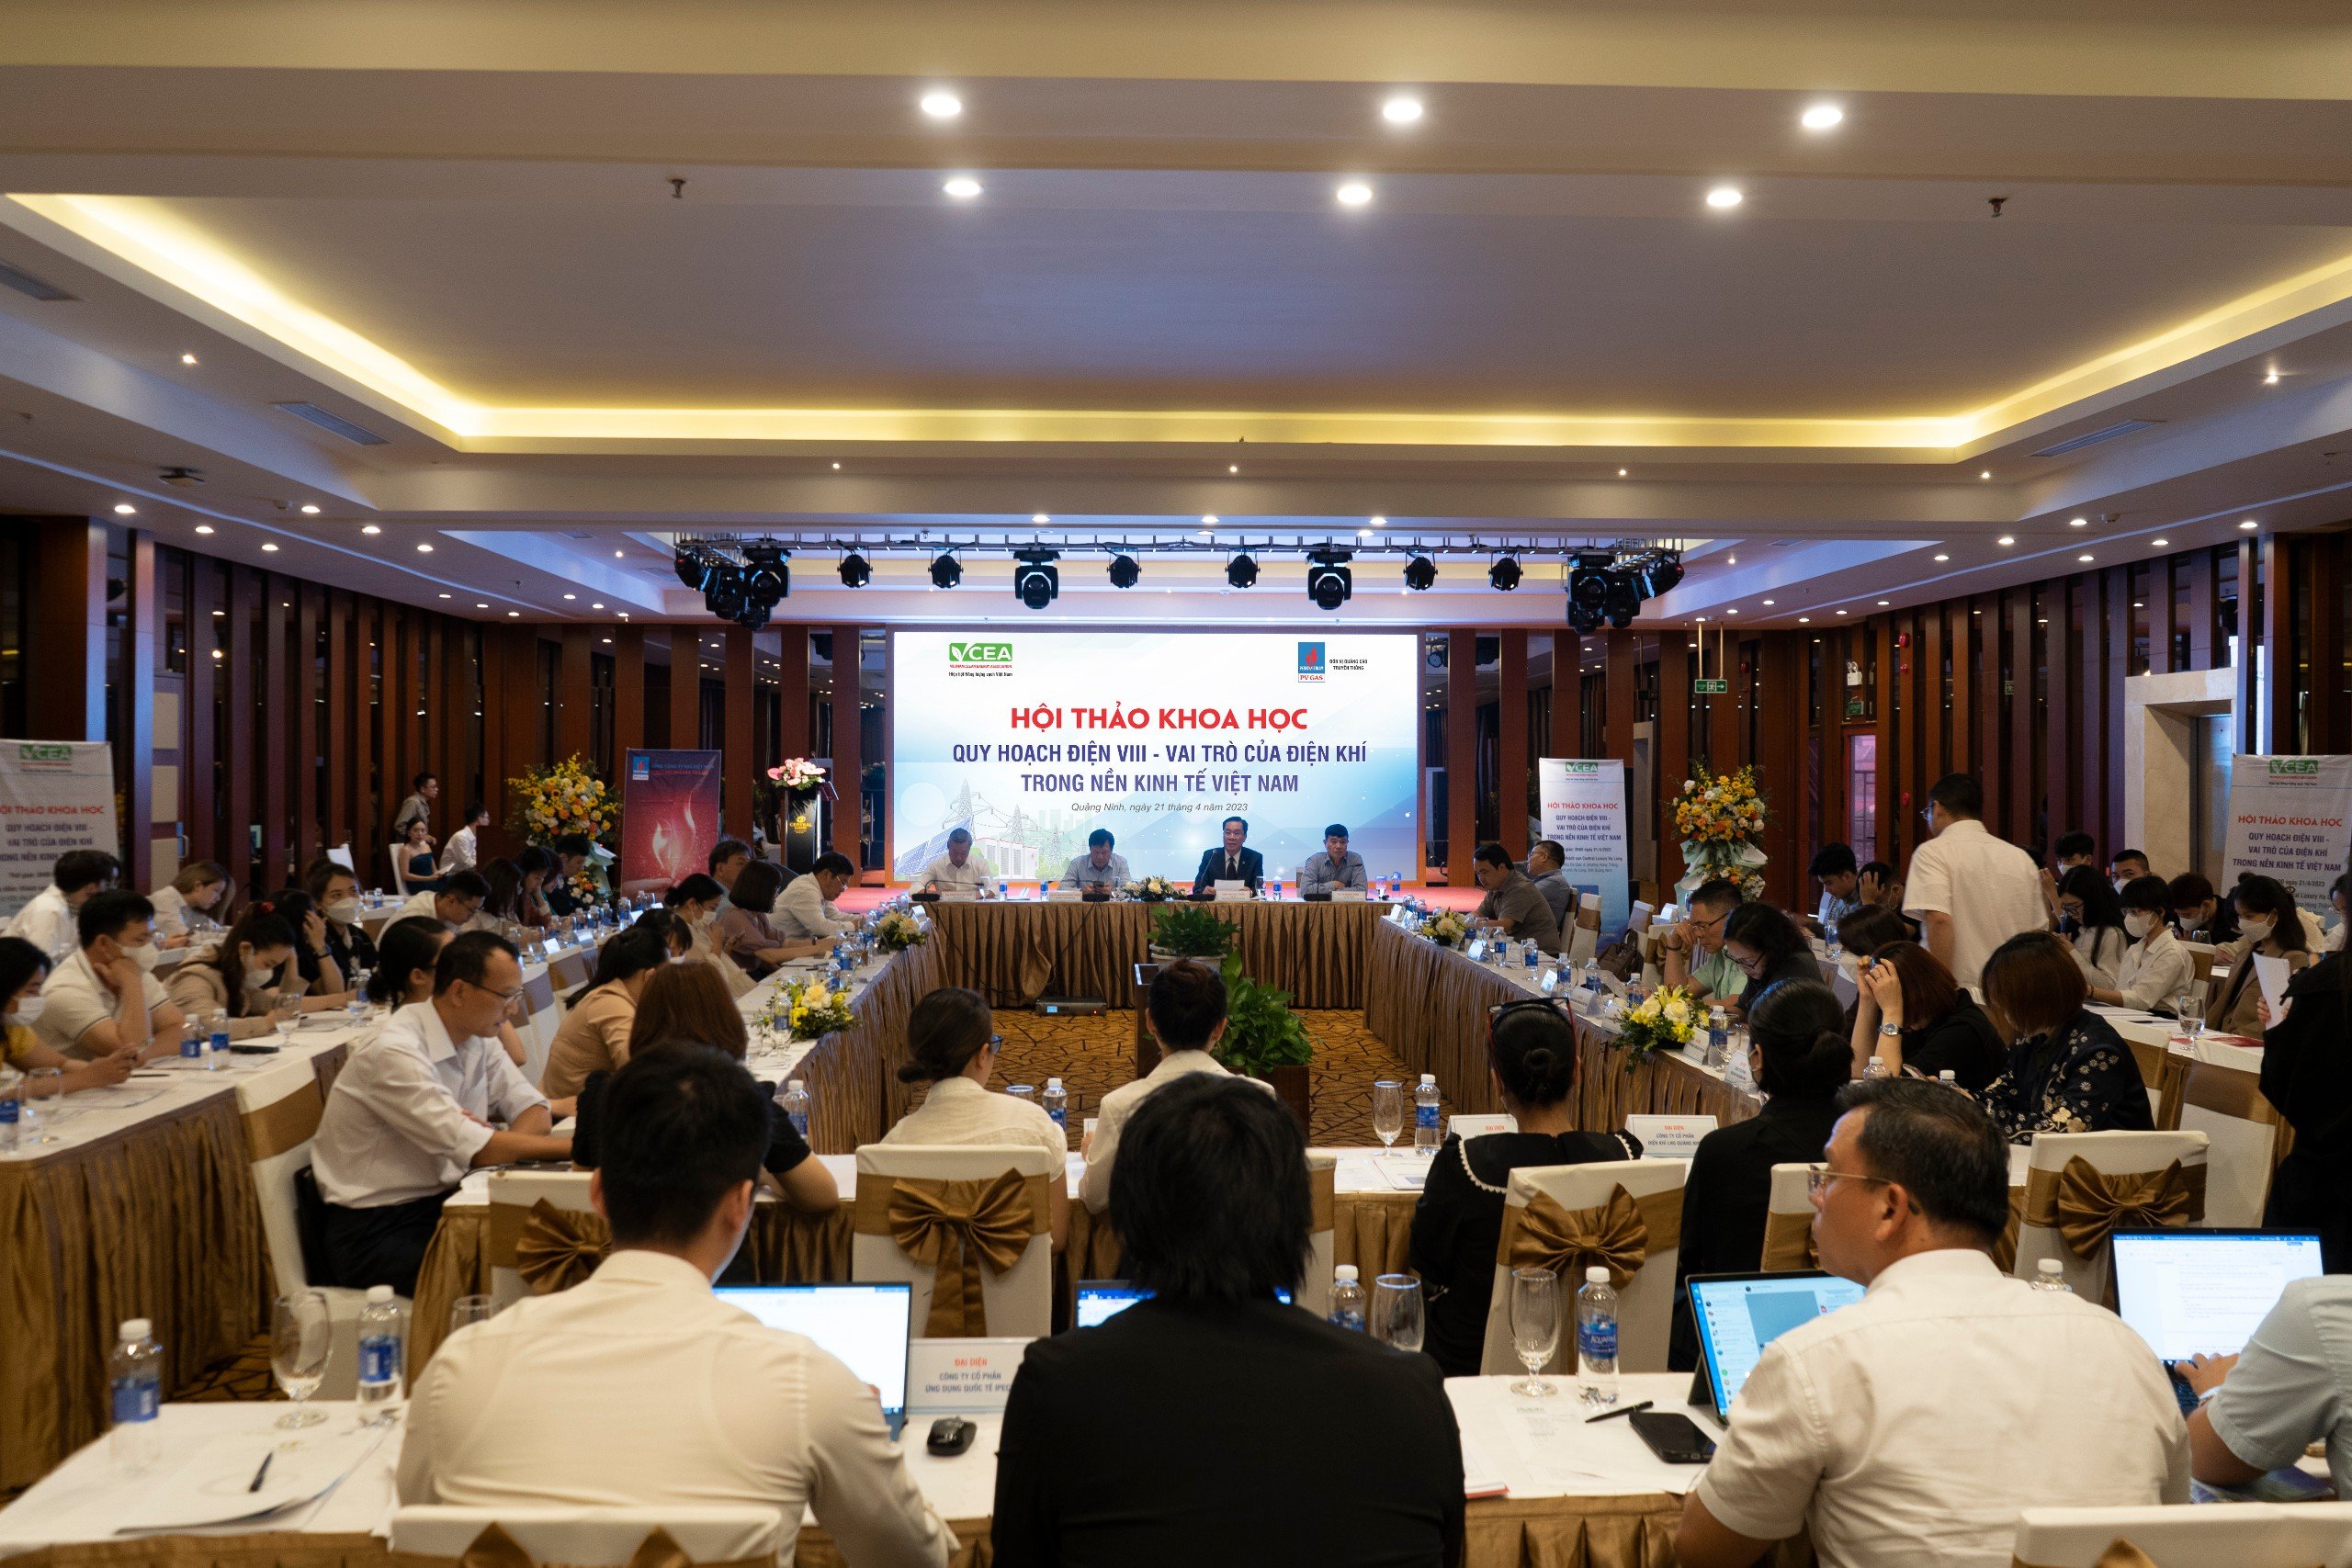 Quy hoạch điện VIII - Vai trò của điện khí trong nền kinh tế Việt Nam”